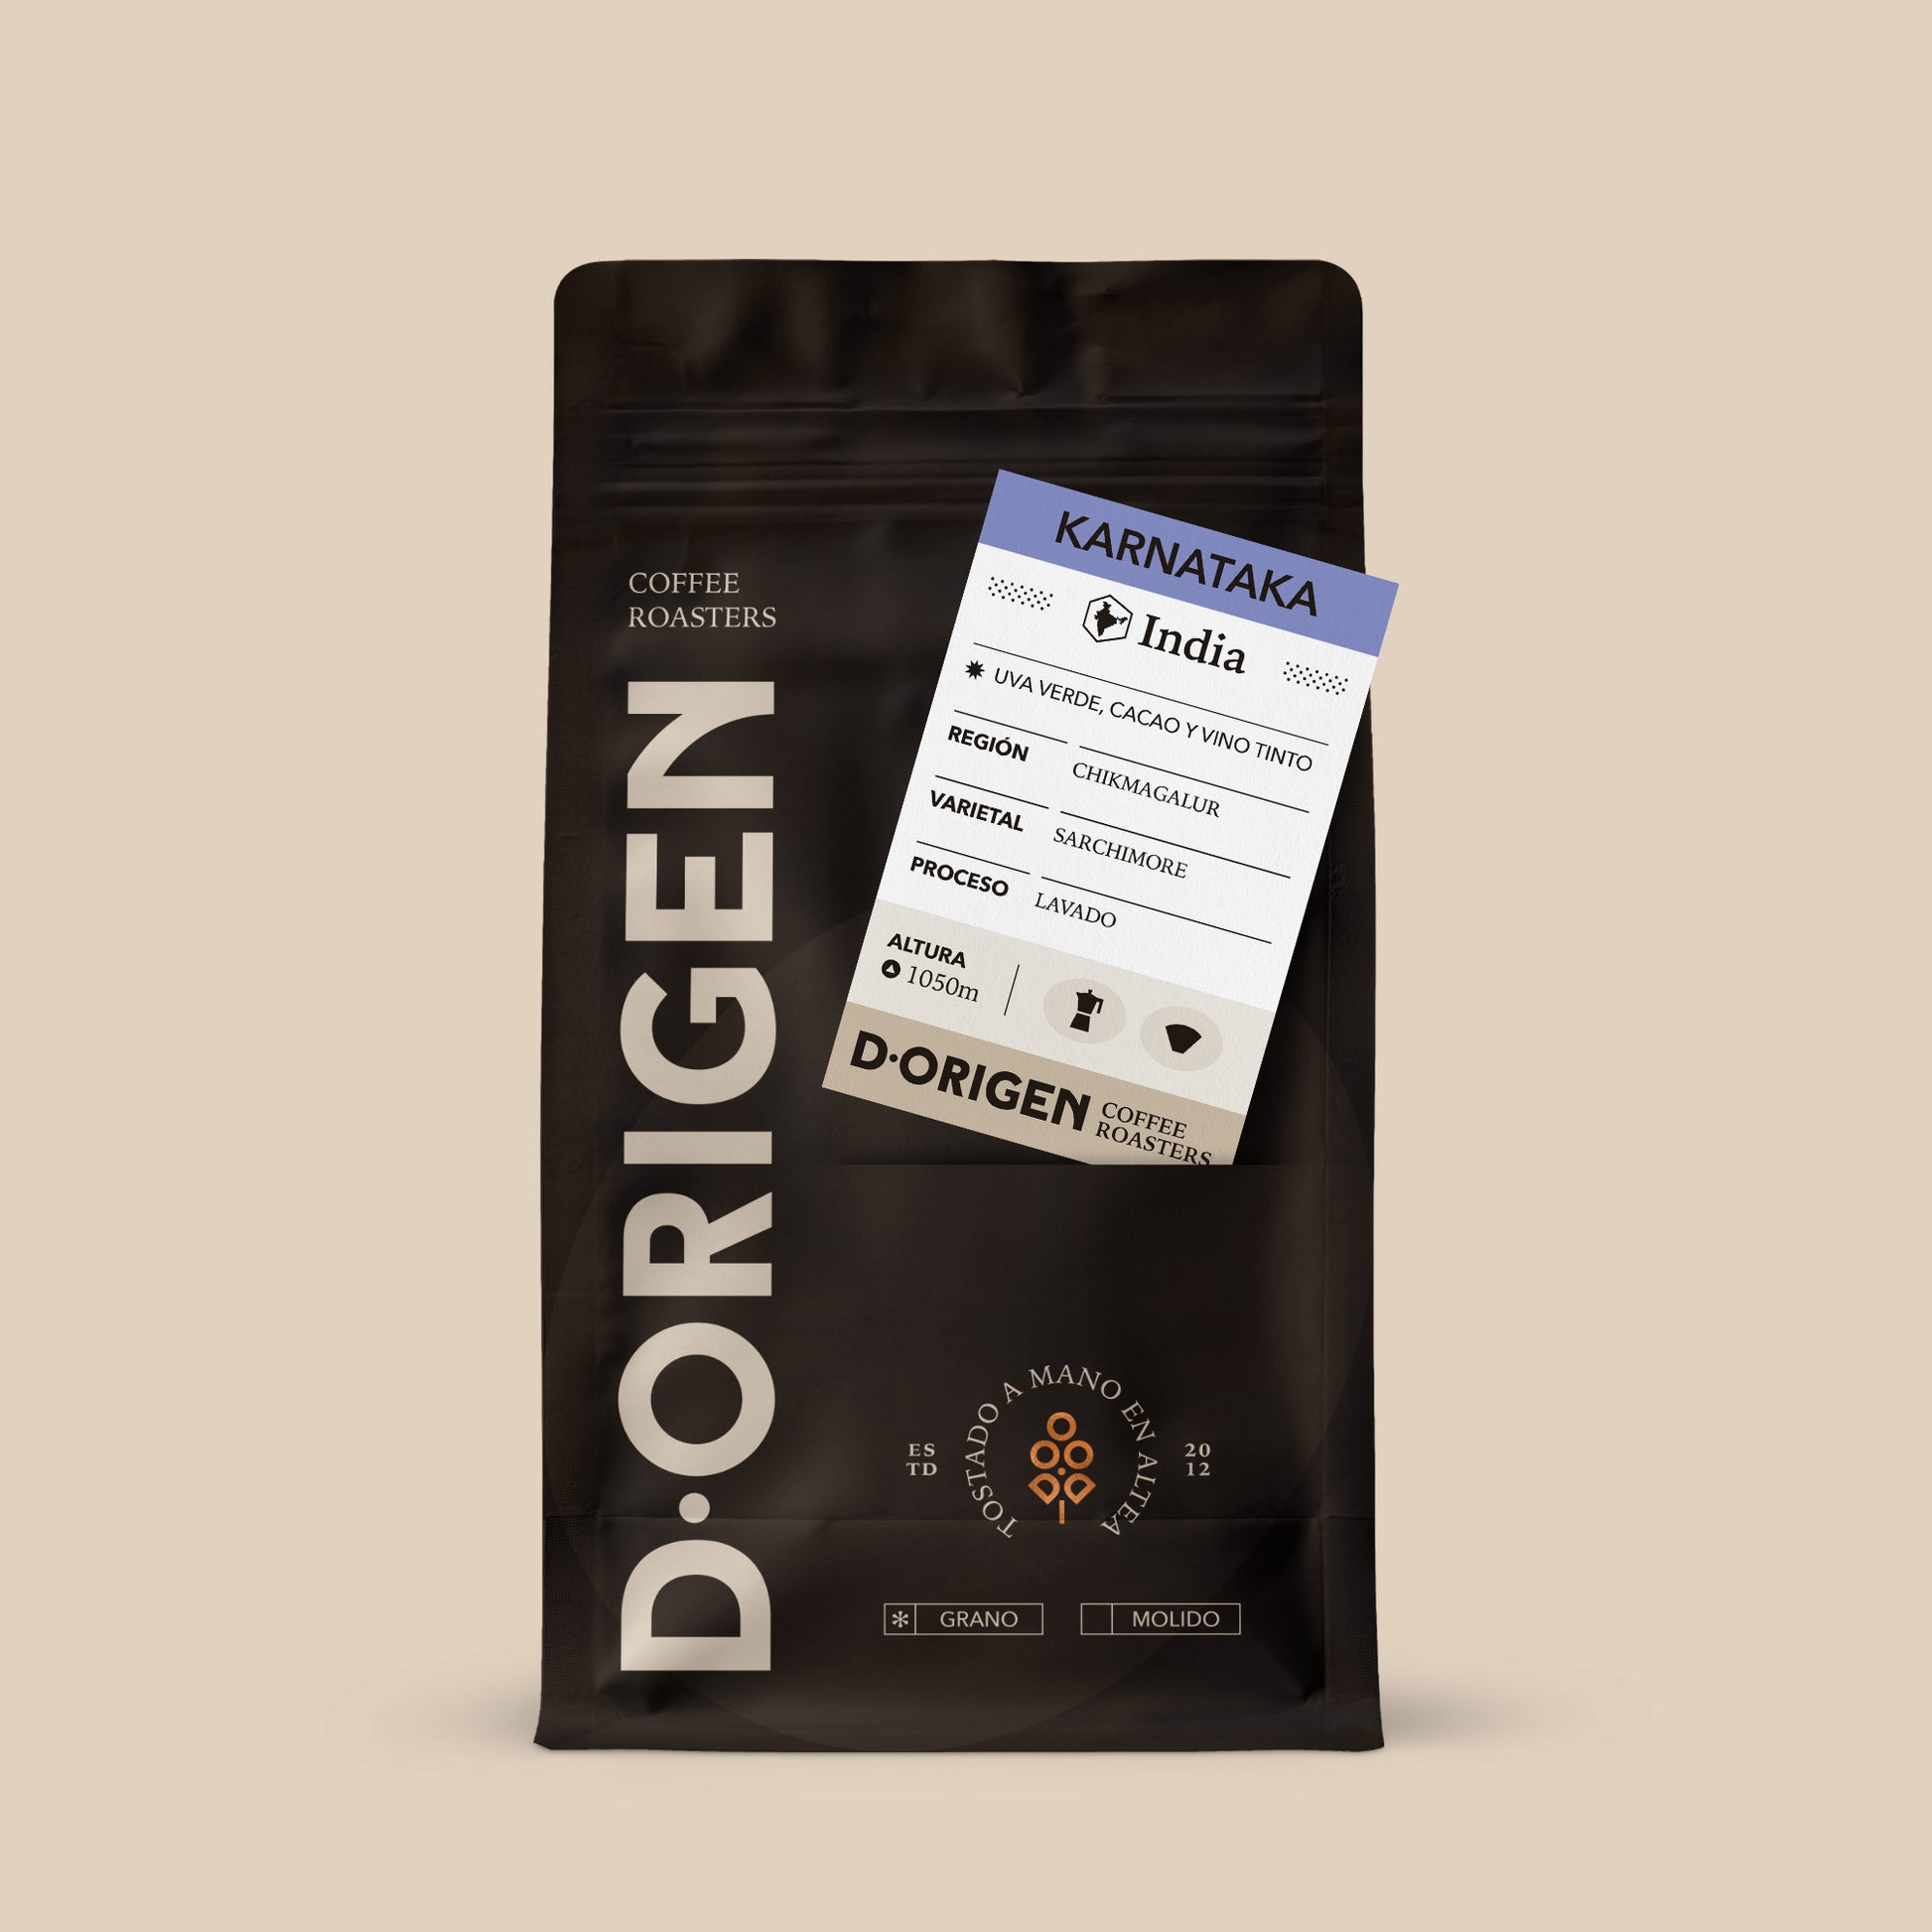 KARNATAKA - D·Origen Coffee Roasters